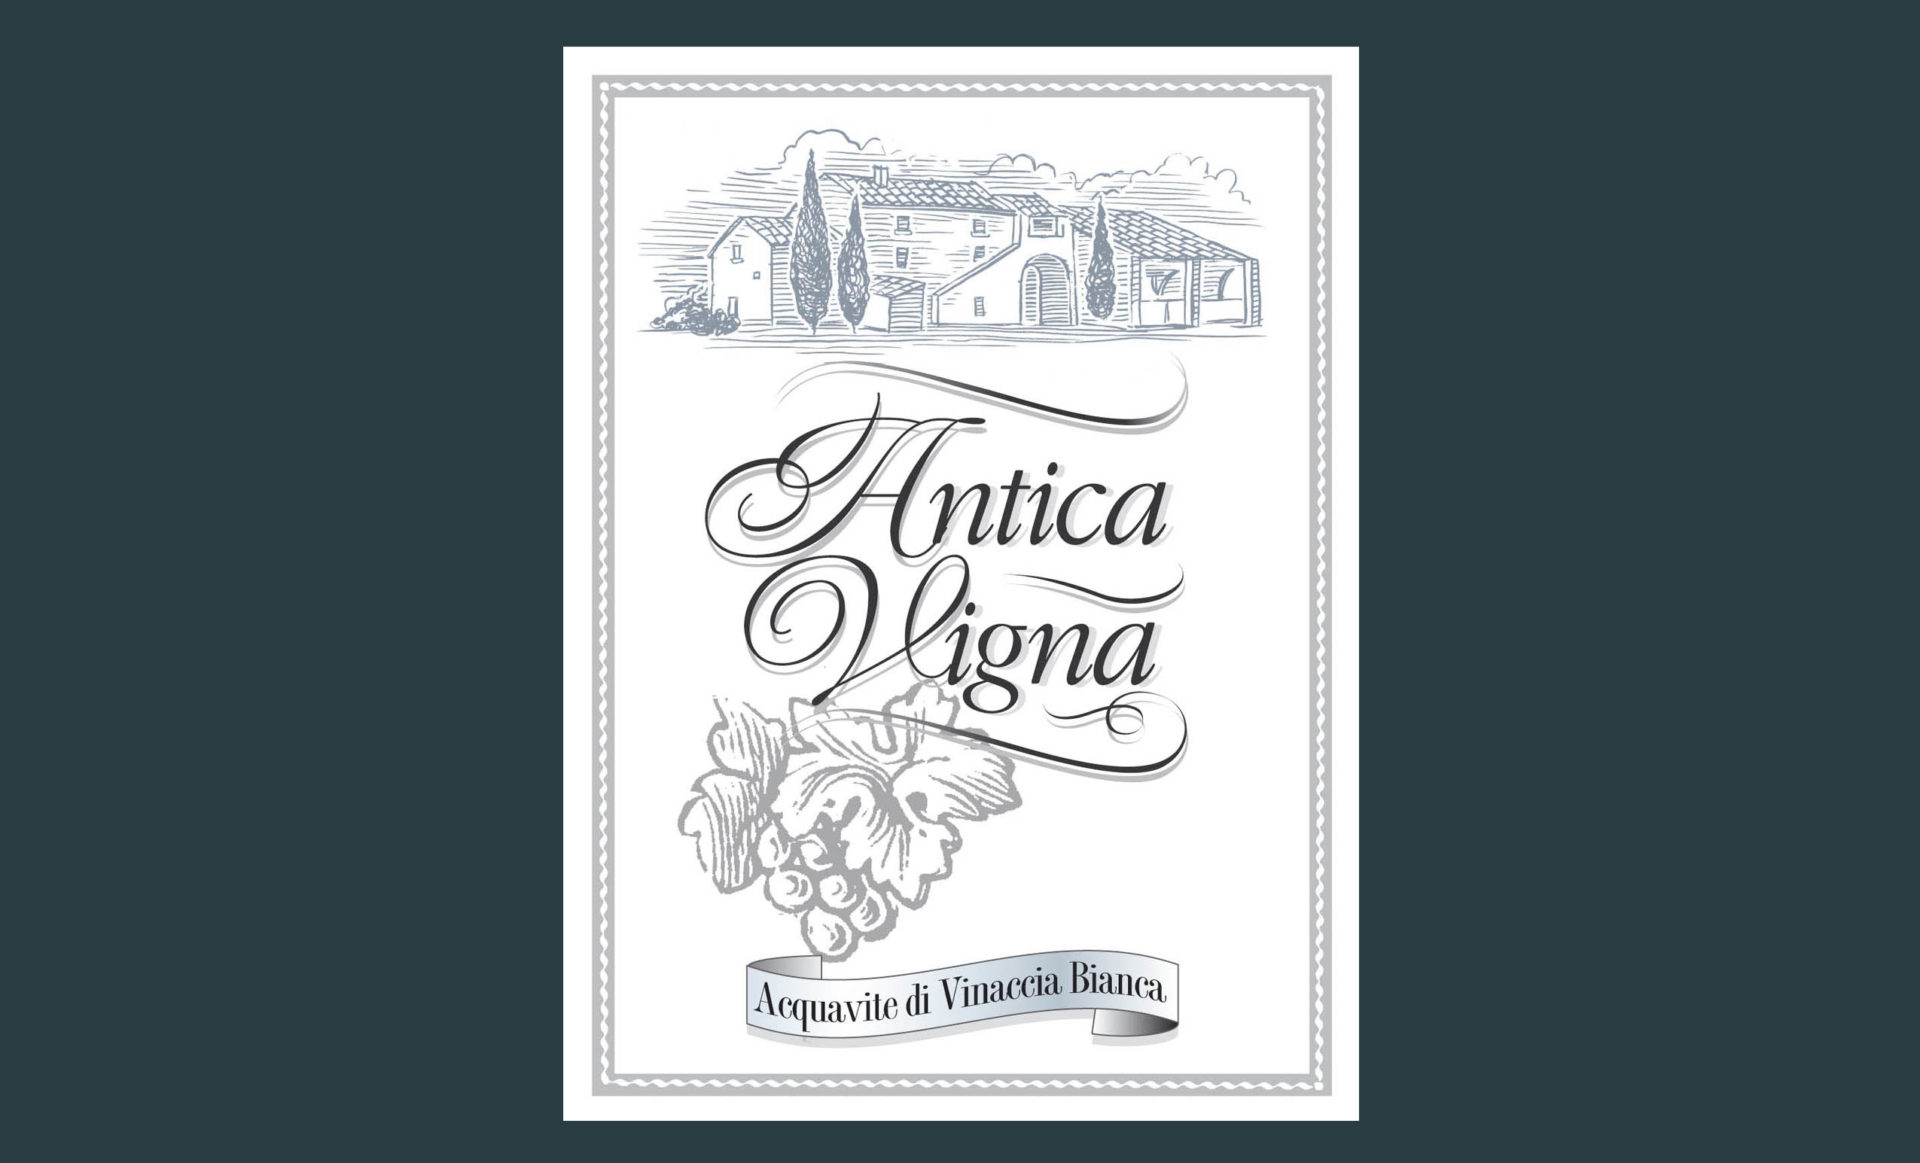 Progettazione etichetta Antica Vigna Acquavite di Vinaccia Bianca Studiovagnetti Perugia